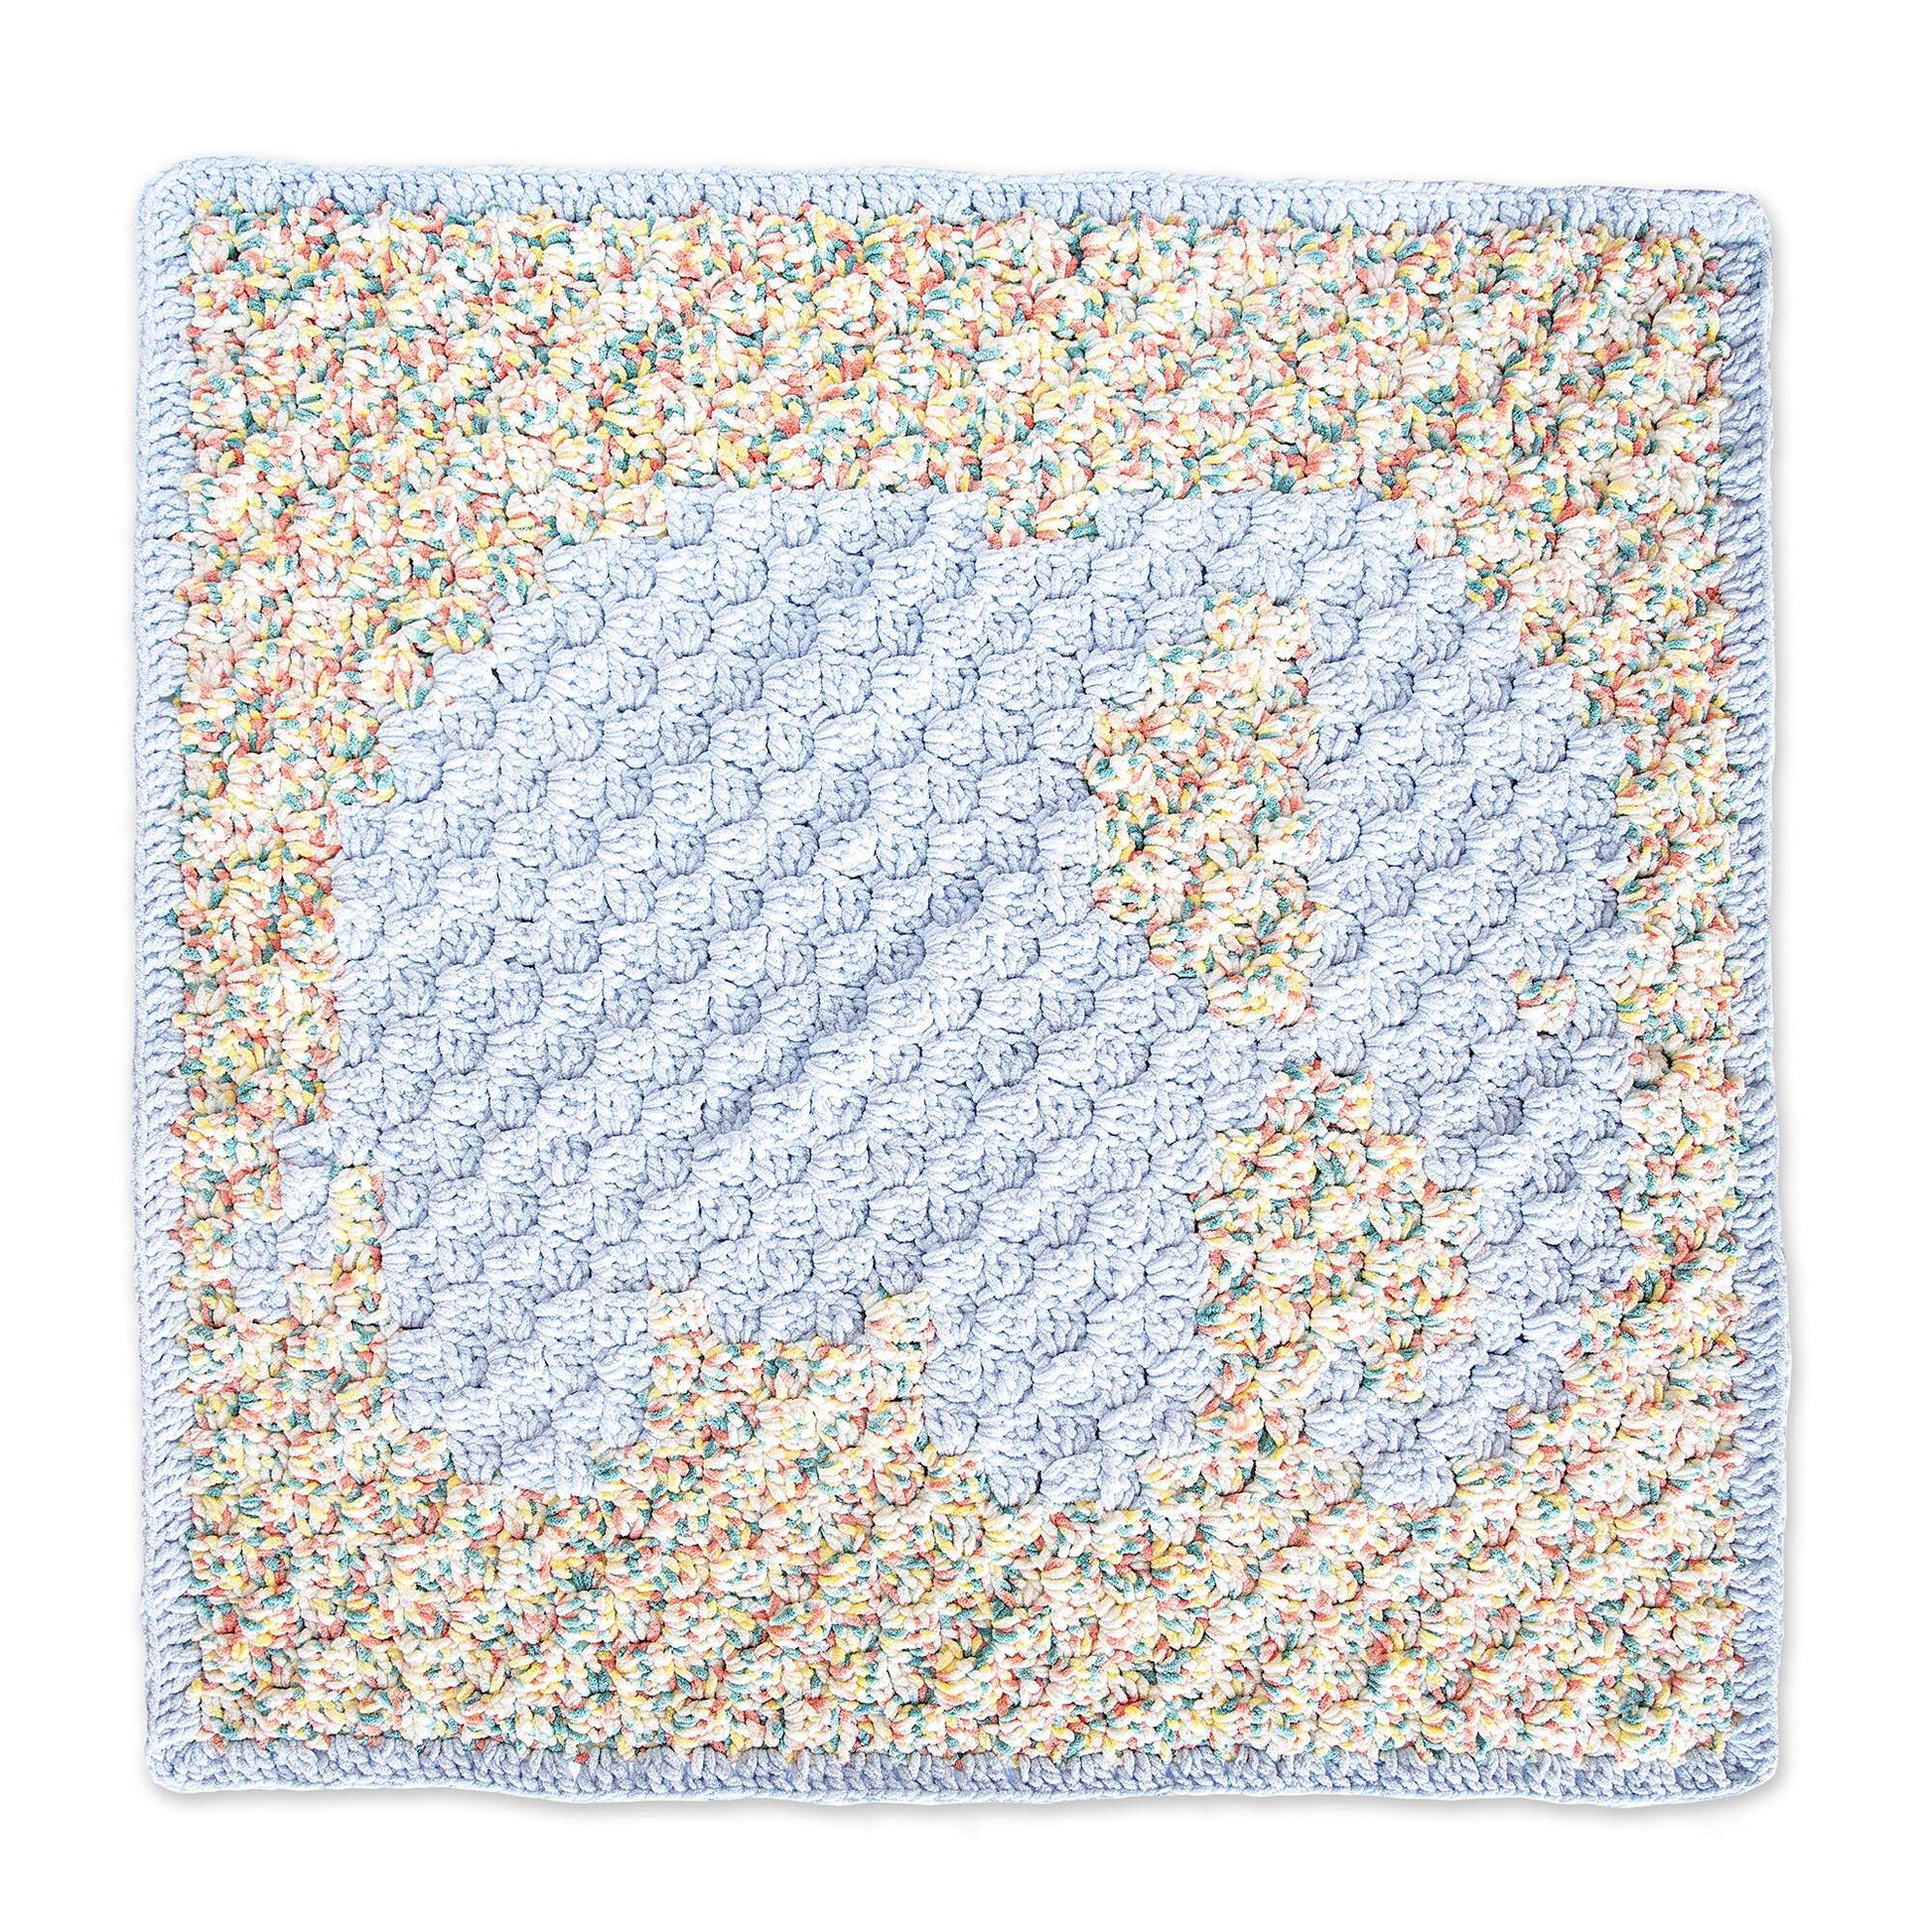 Free Bernat Elephant Crochet Baby Blanket Pattern